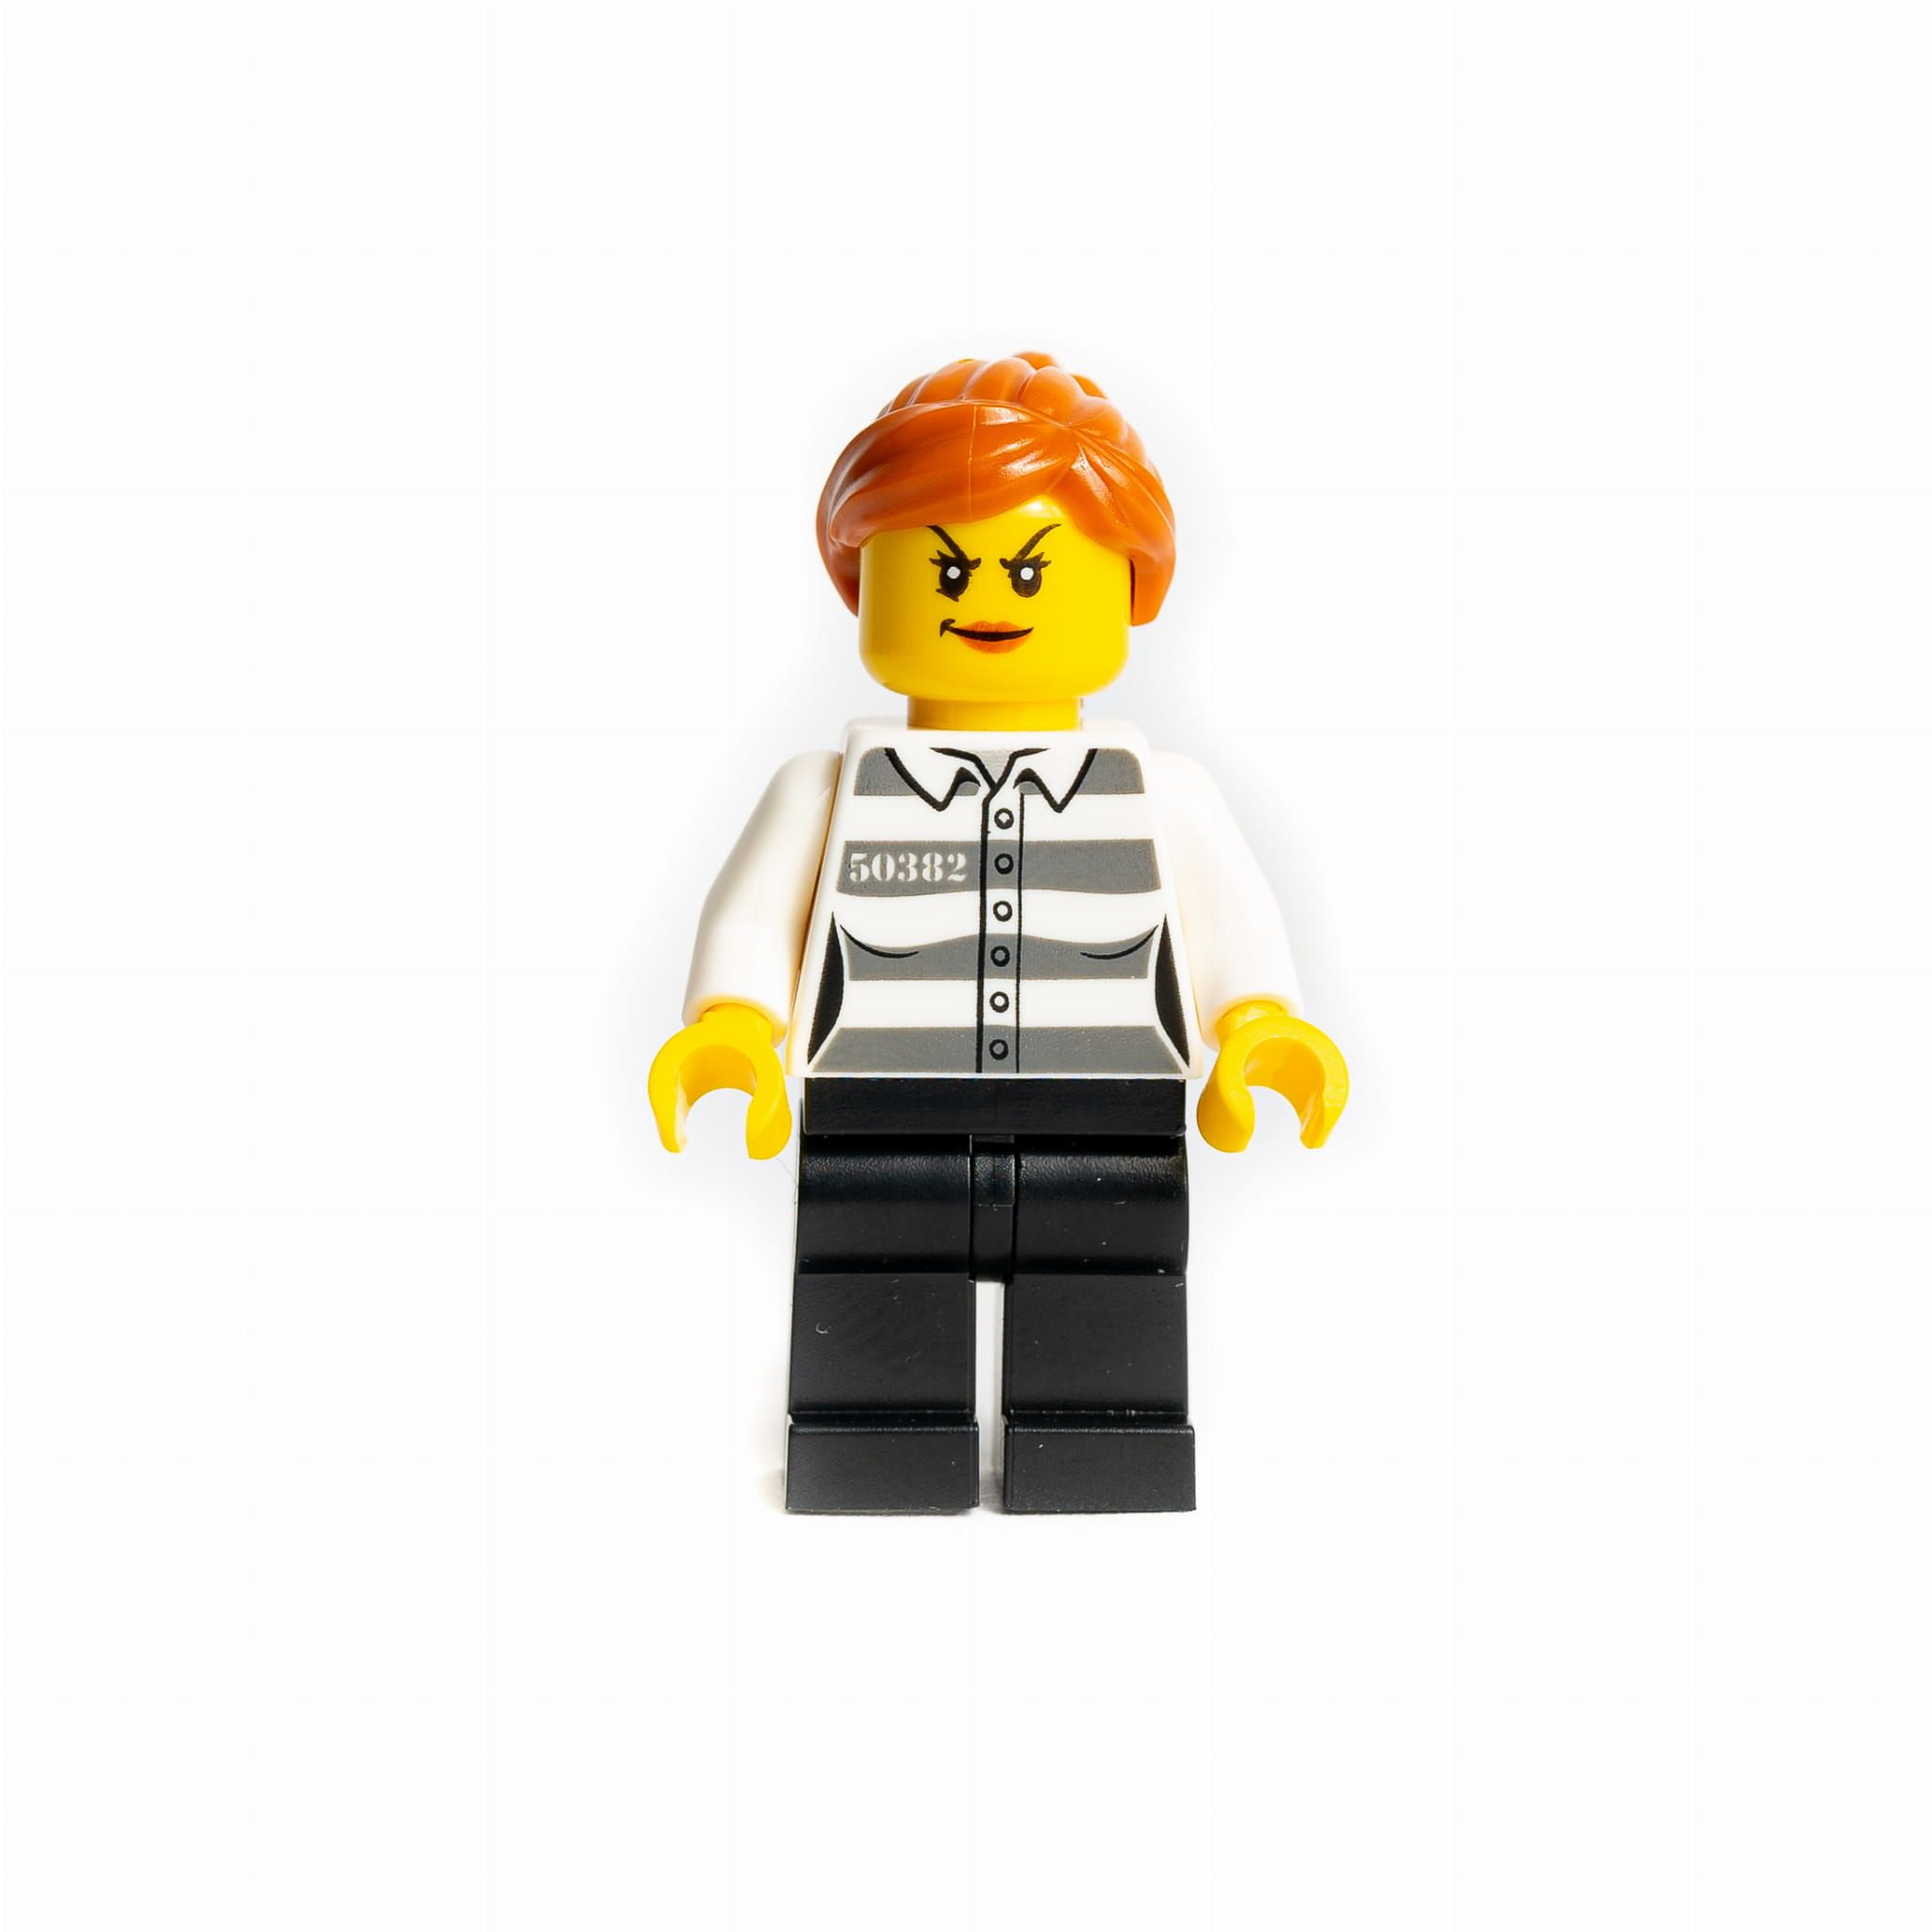 Lego Figurka Jail Prisoner 50382 Więzień Cty1129